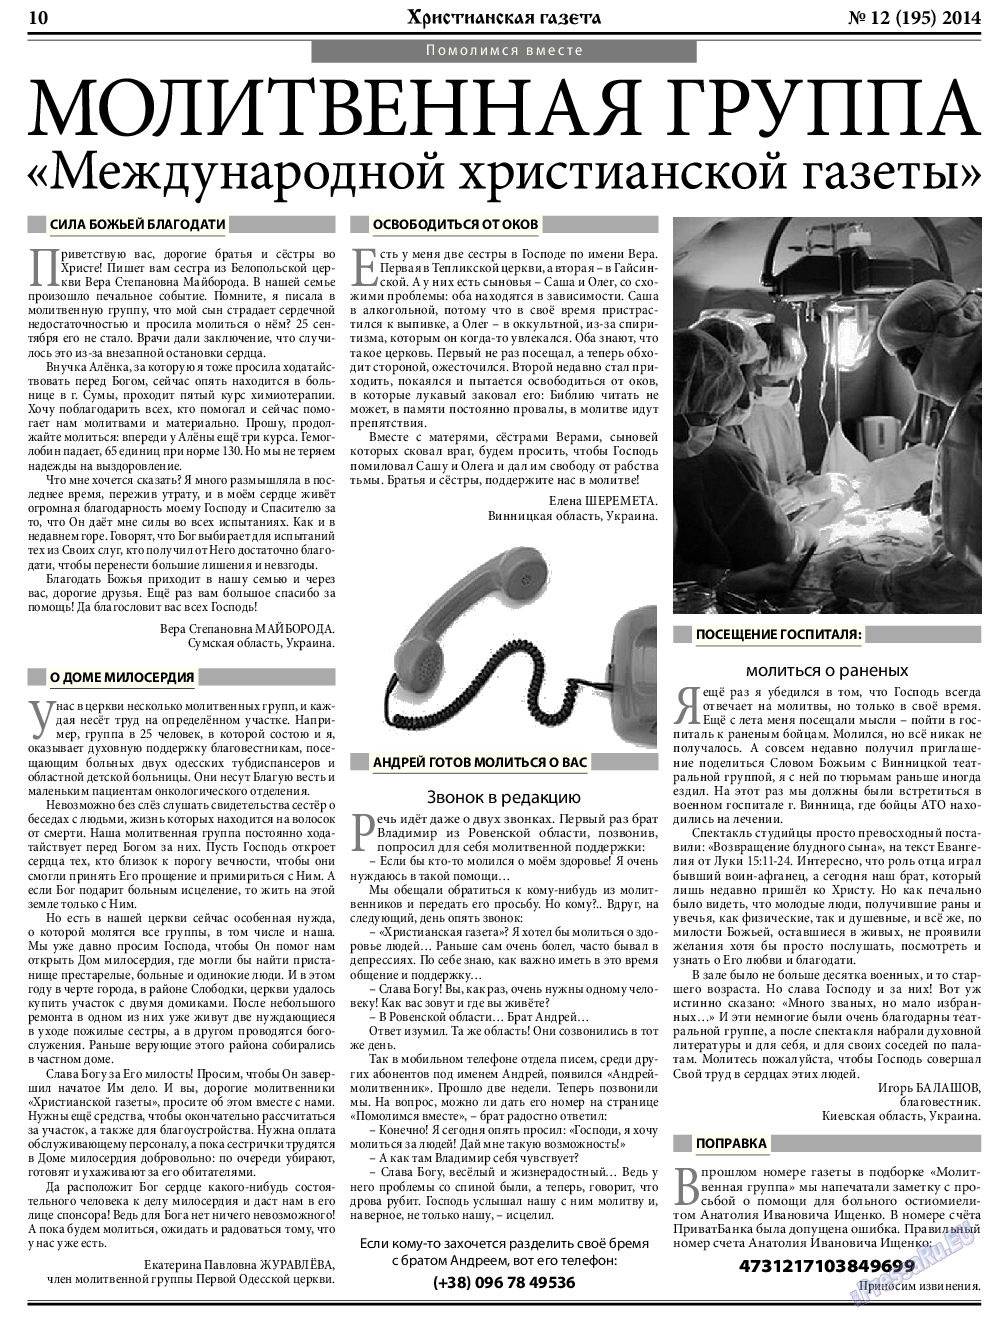 Христианская газета, газета. 2014 №12 стр.10